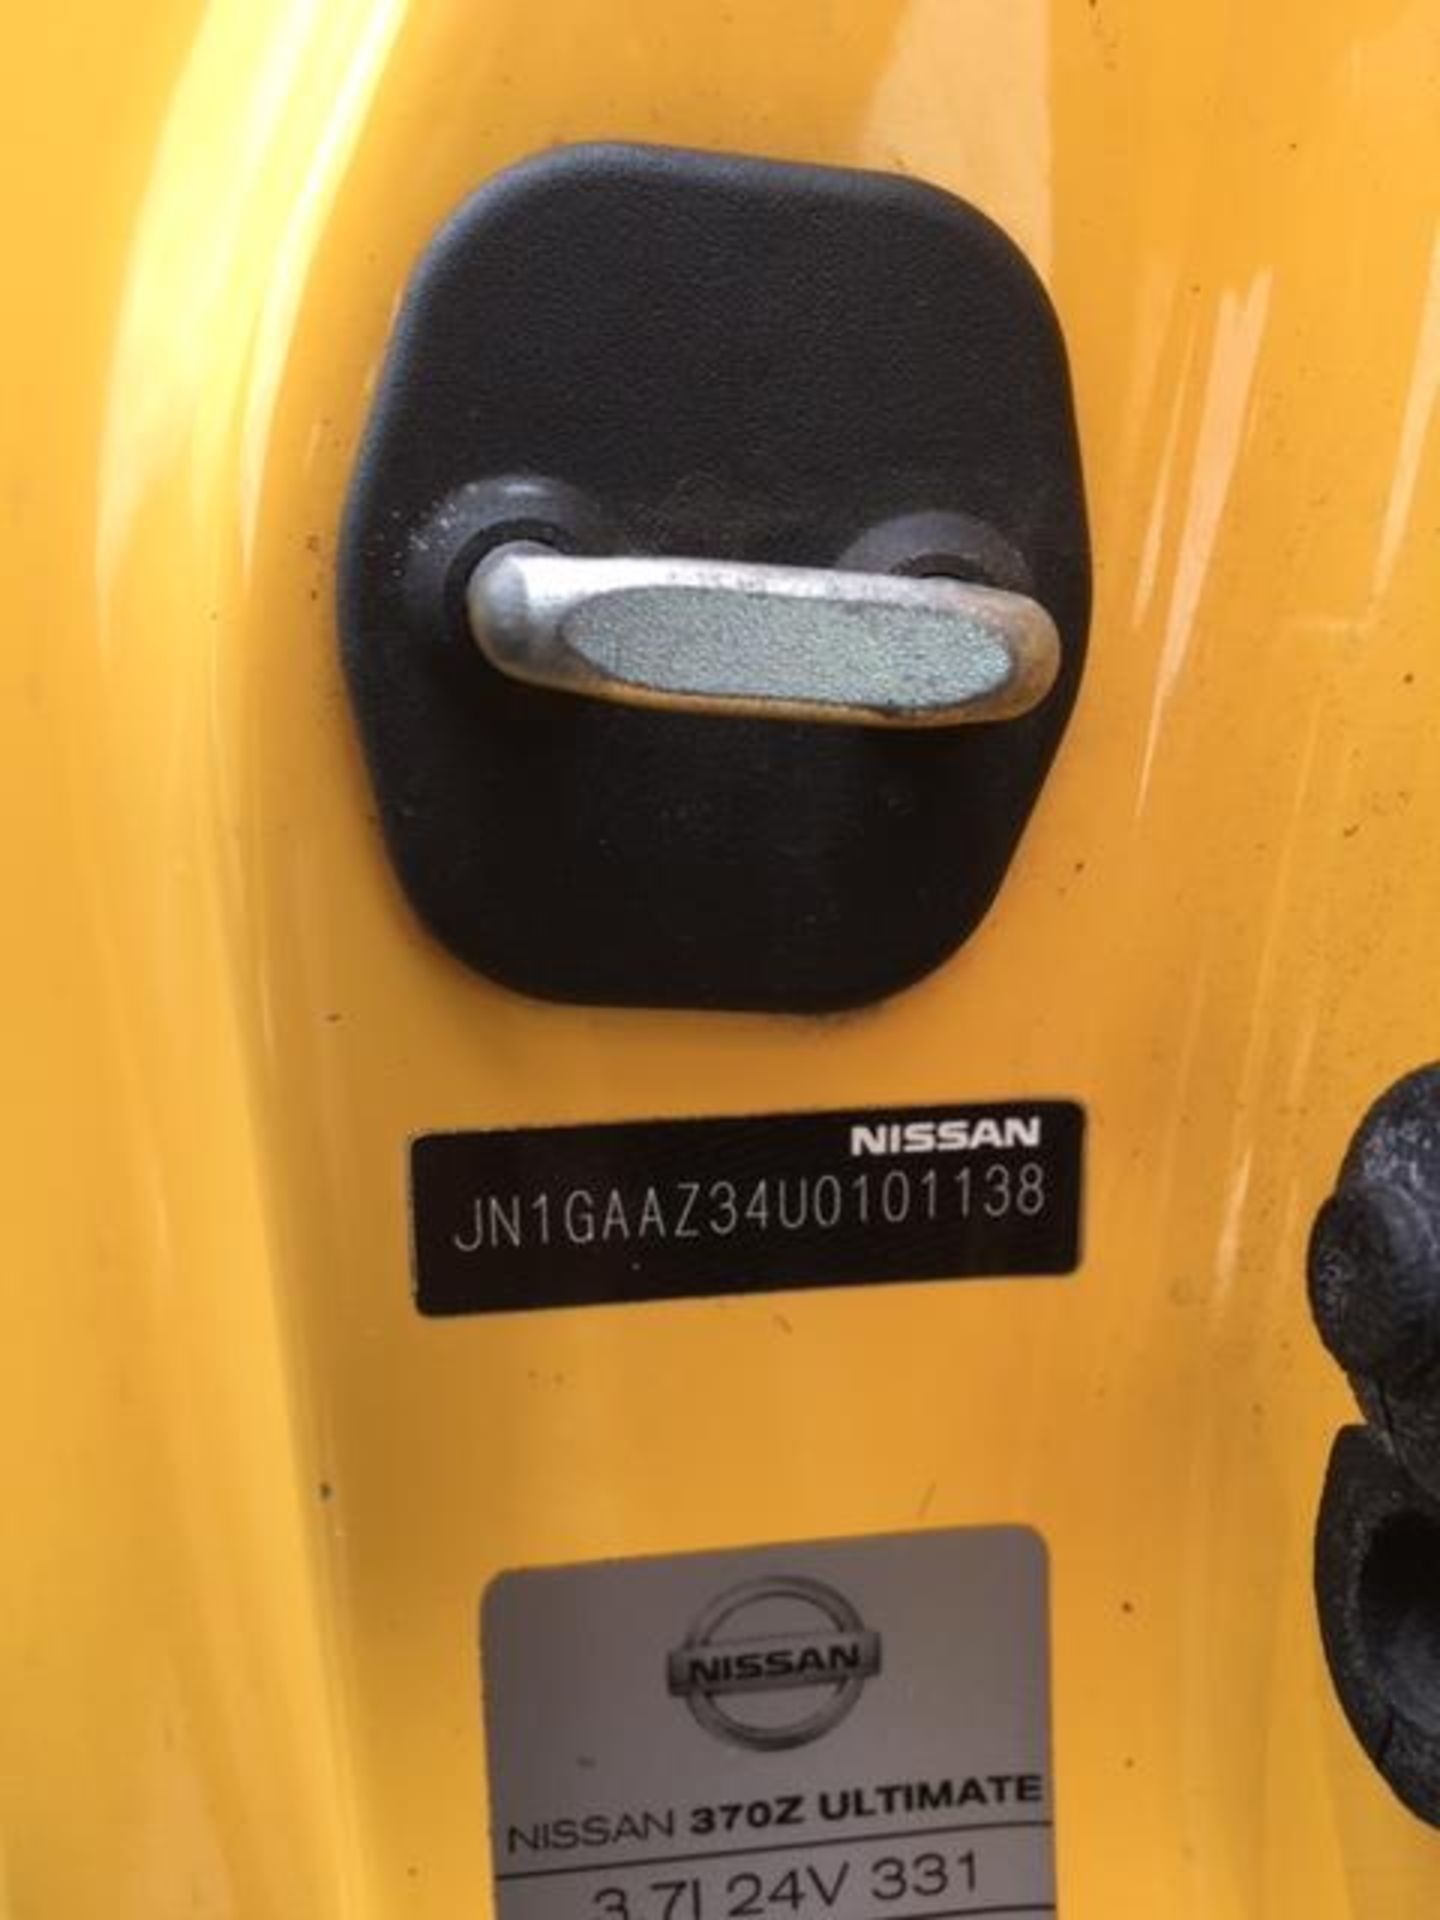 NISSAN 370Z GT V6 S-A - 3696cc - Image 12 of 21